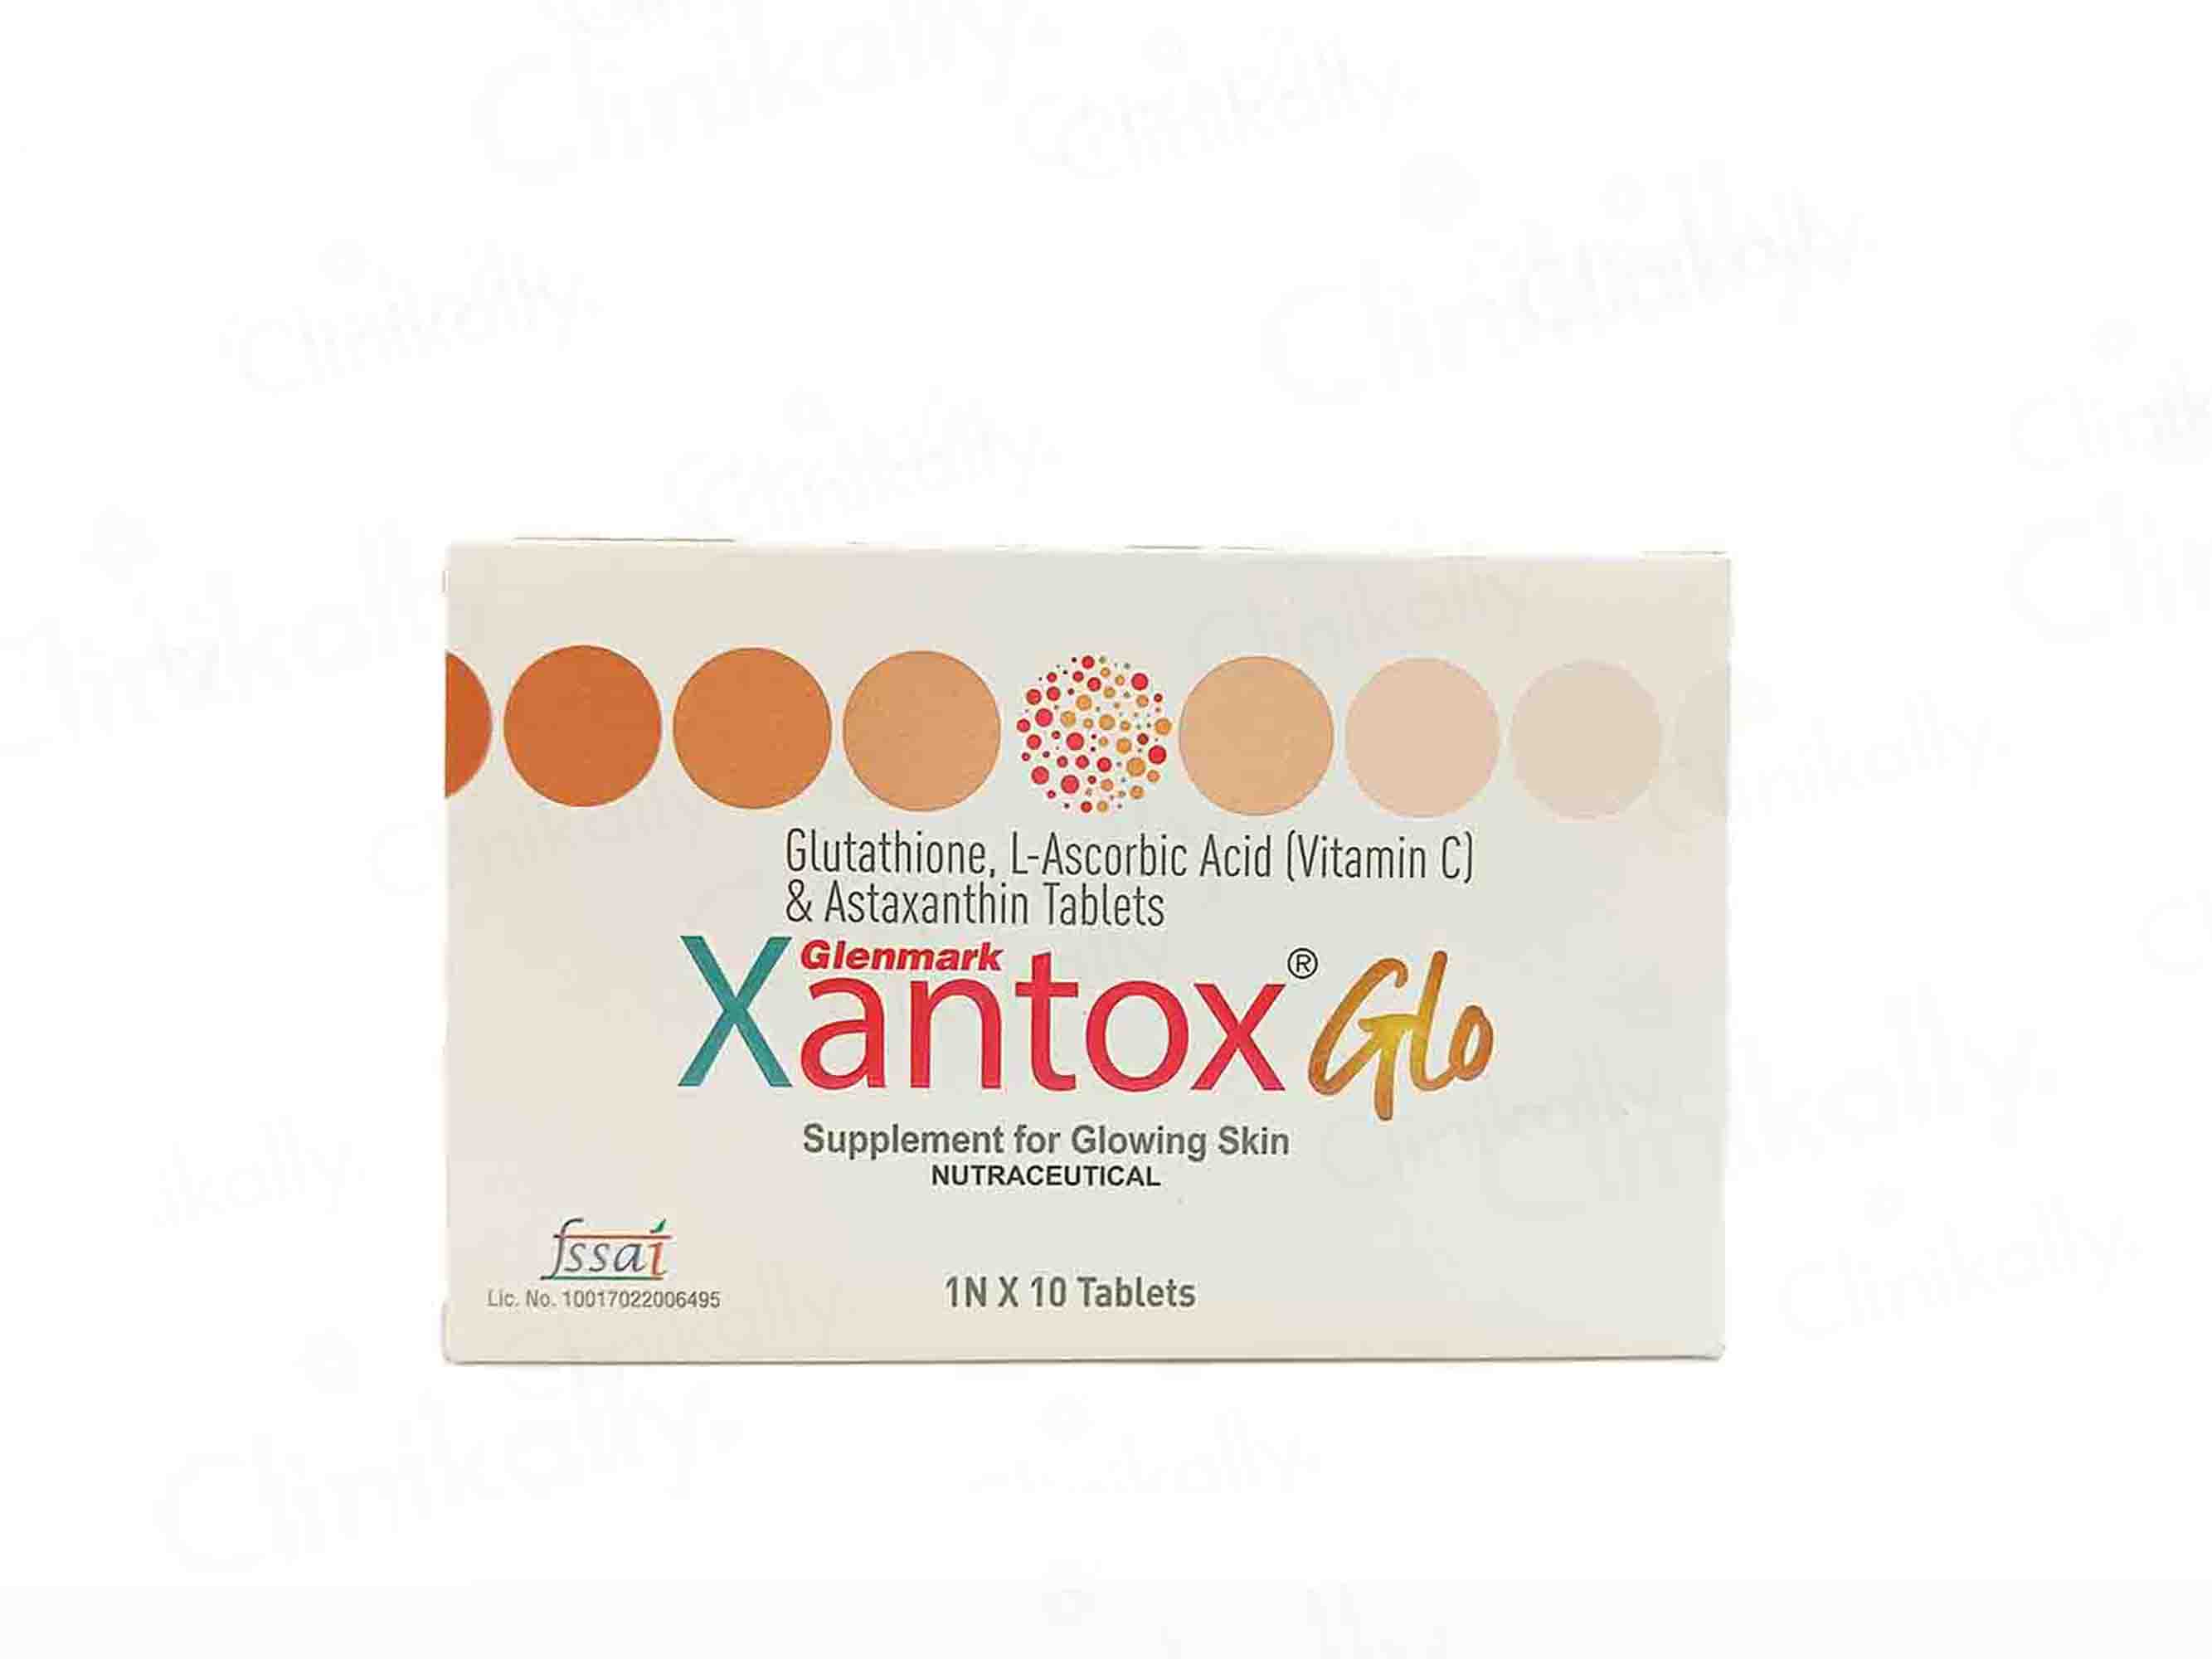 Xantox Glo Tablet - Clinikally